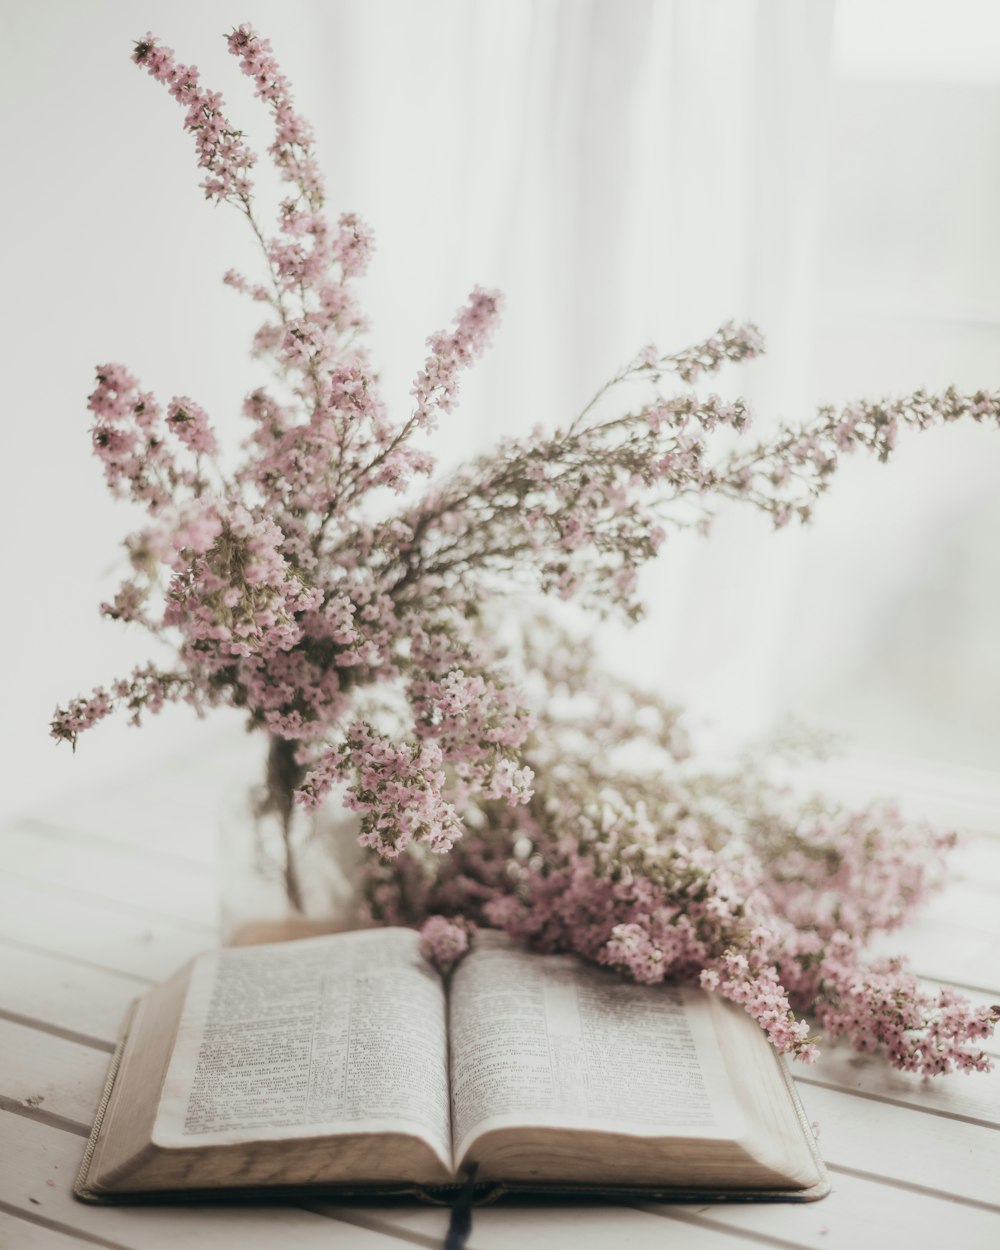 Un libro aperto seduto sopra un tavolo accanto a un mazzo di fiori